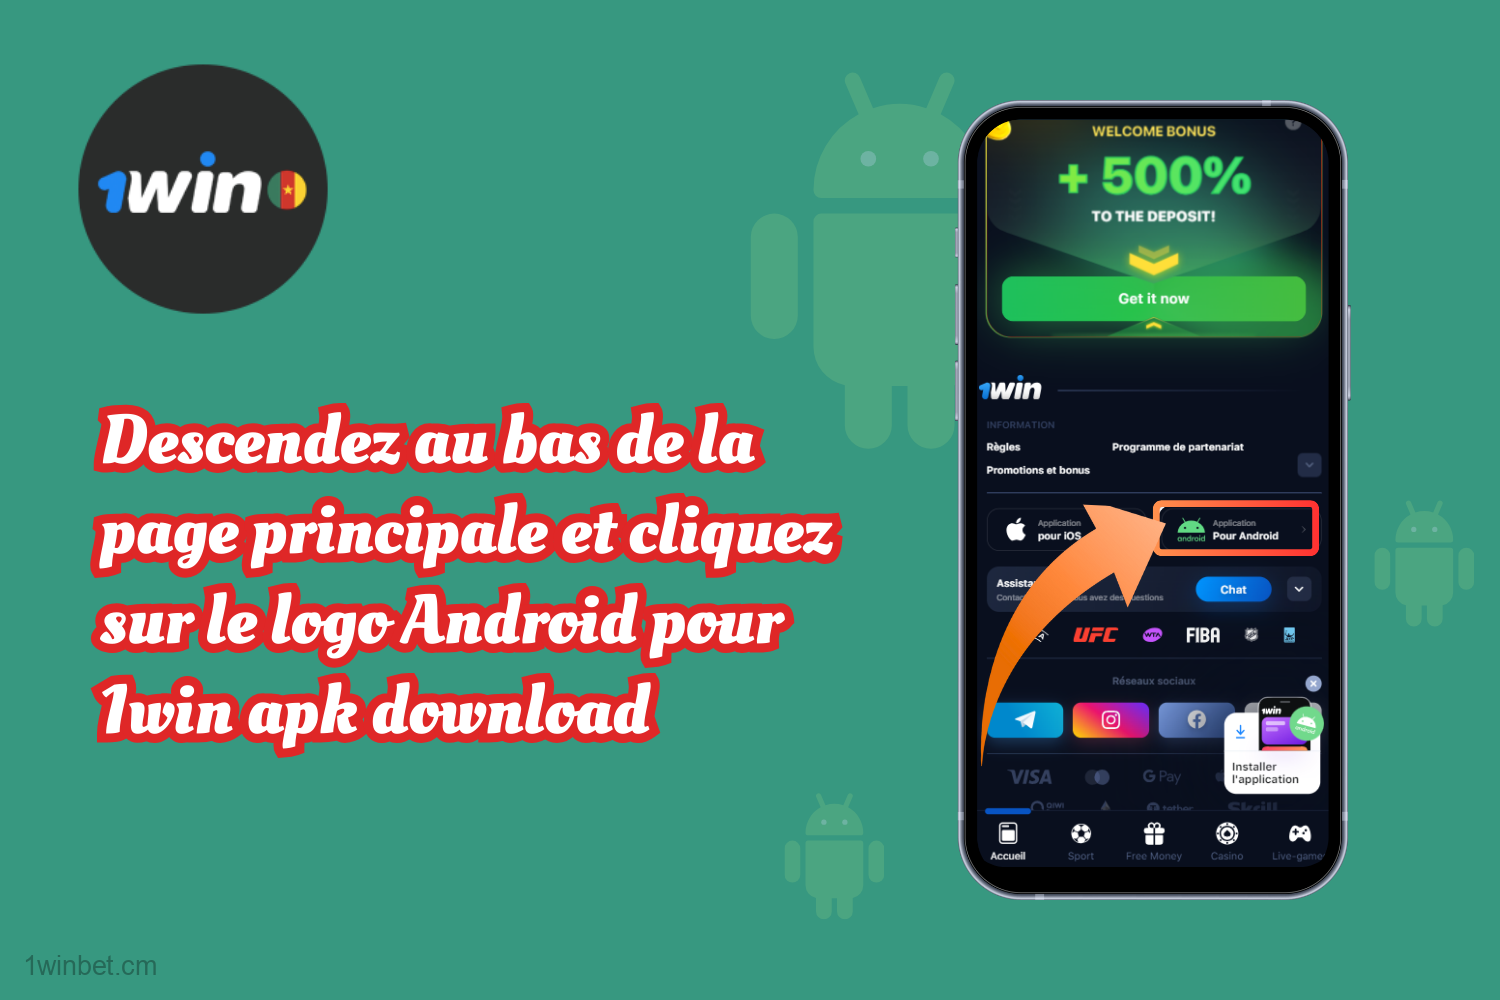 Les utilisateurs camerounais doivent faire défiler la page d'accueil et cliquer sur le logo Android pour télécharger l'apk 1win